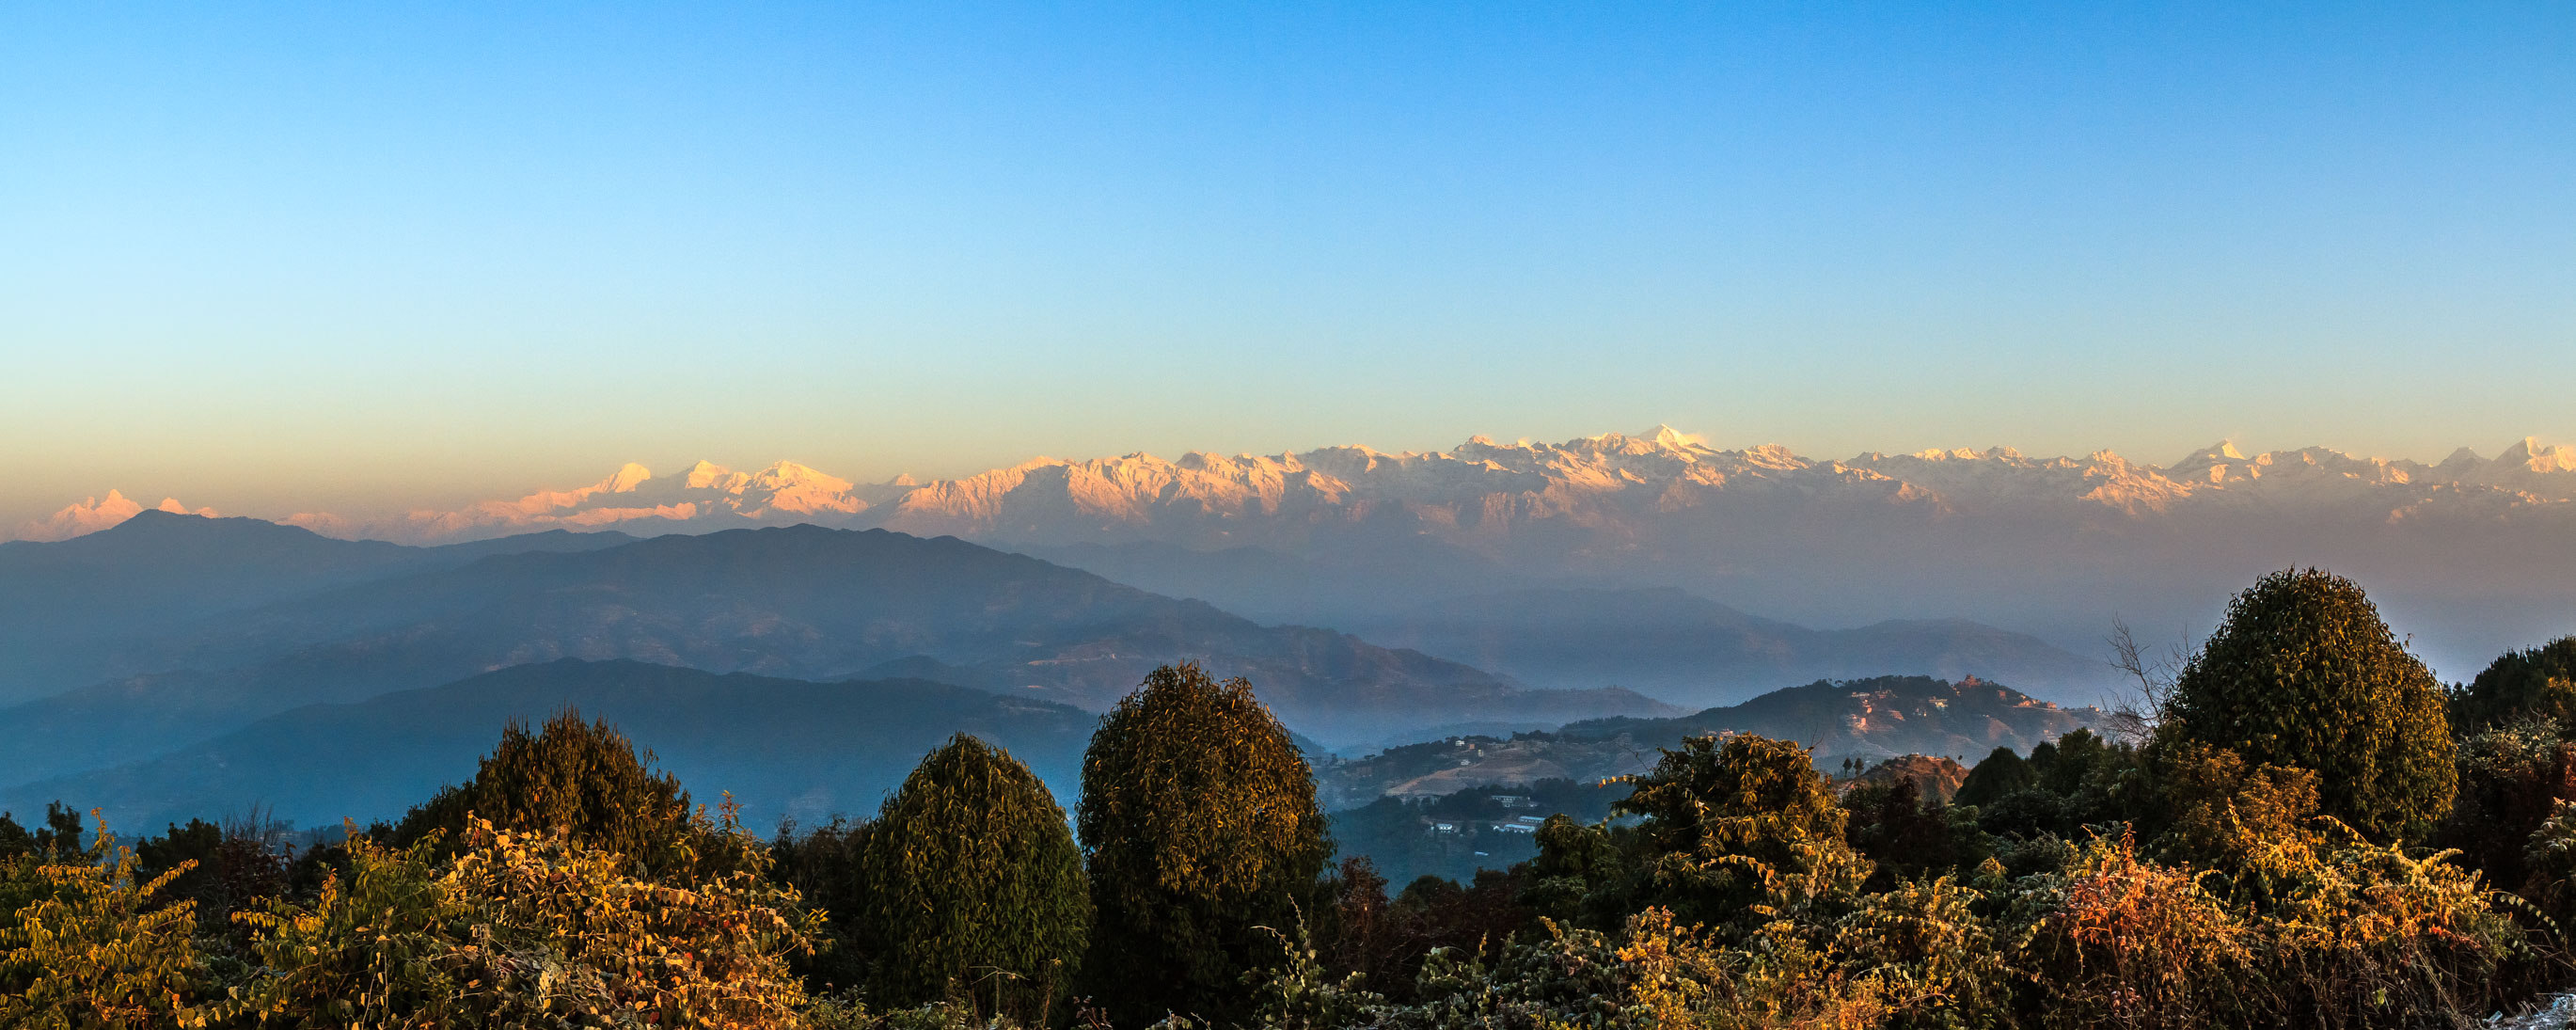 /Guewen/galeries/public/Voyages/panorama/hymalaya/Himalaya-pano_01.jpg